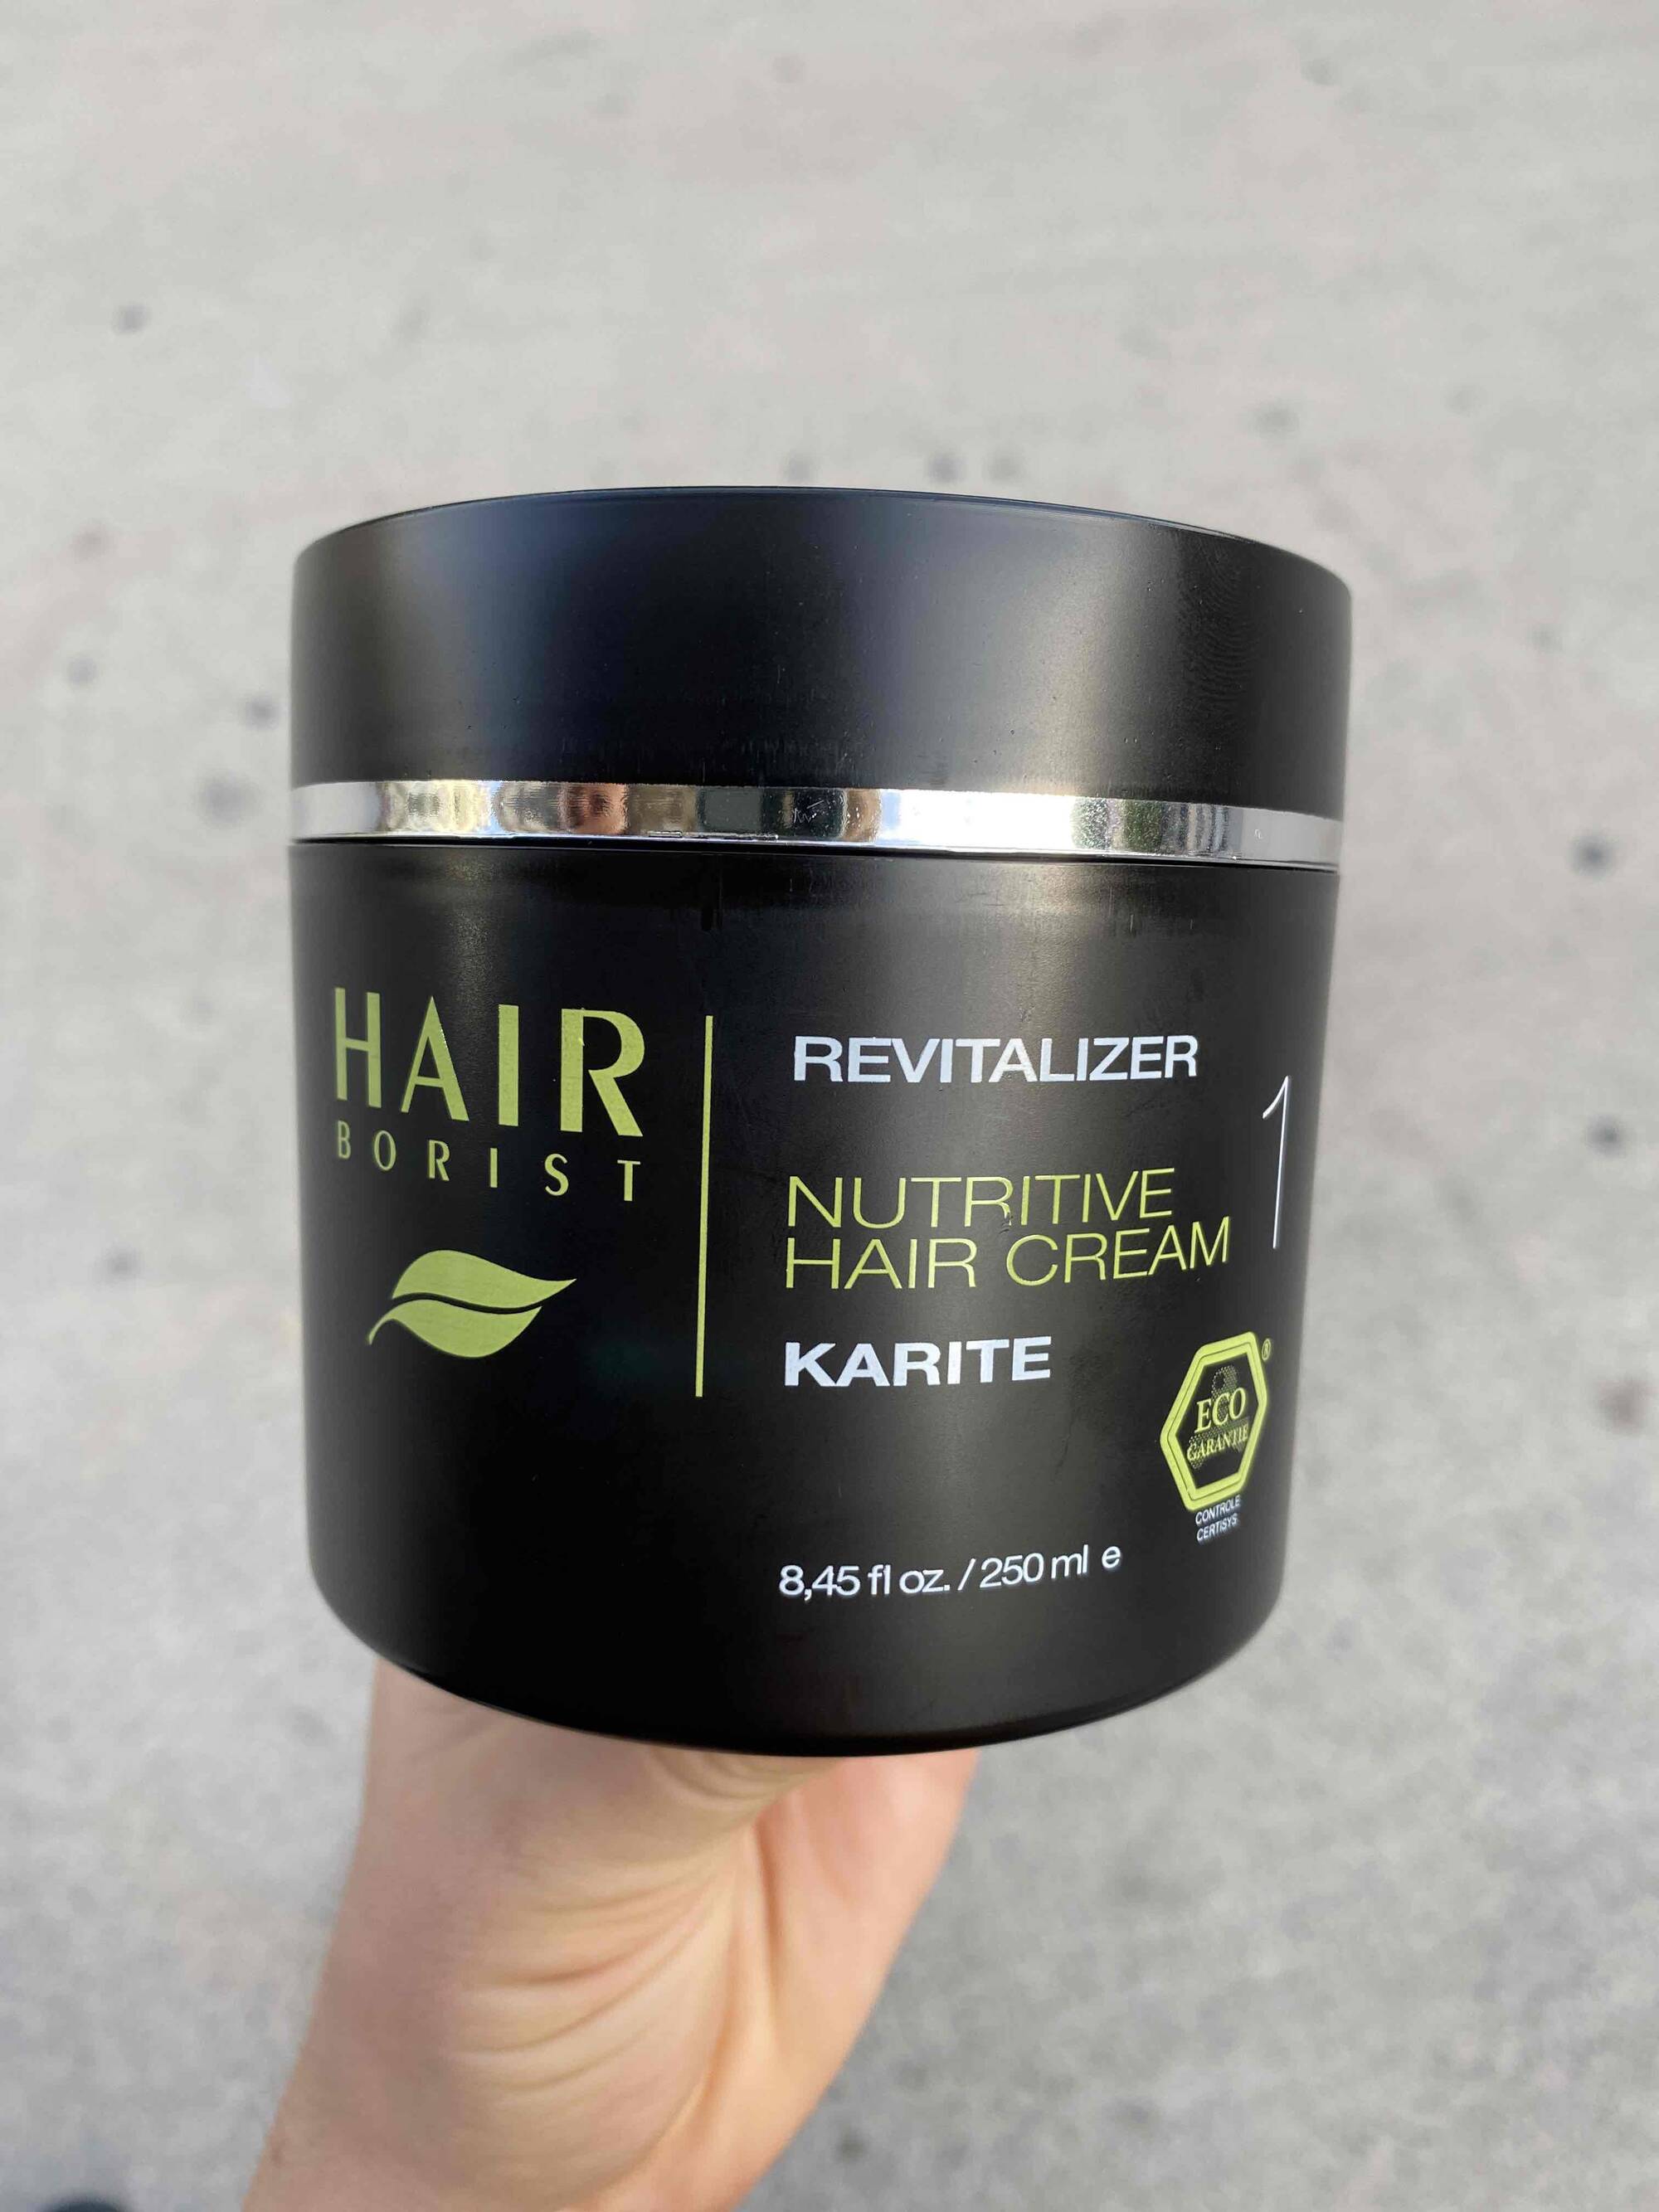 HAIR BORIST - Nutritive hair cream karite 